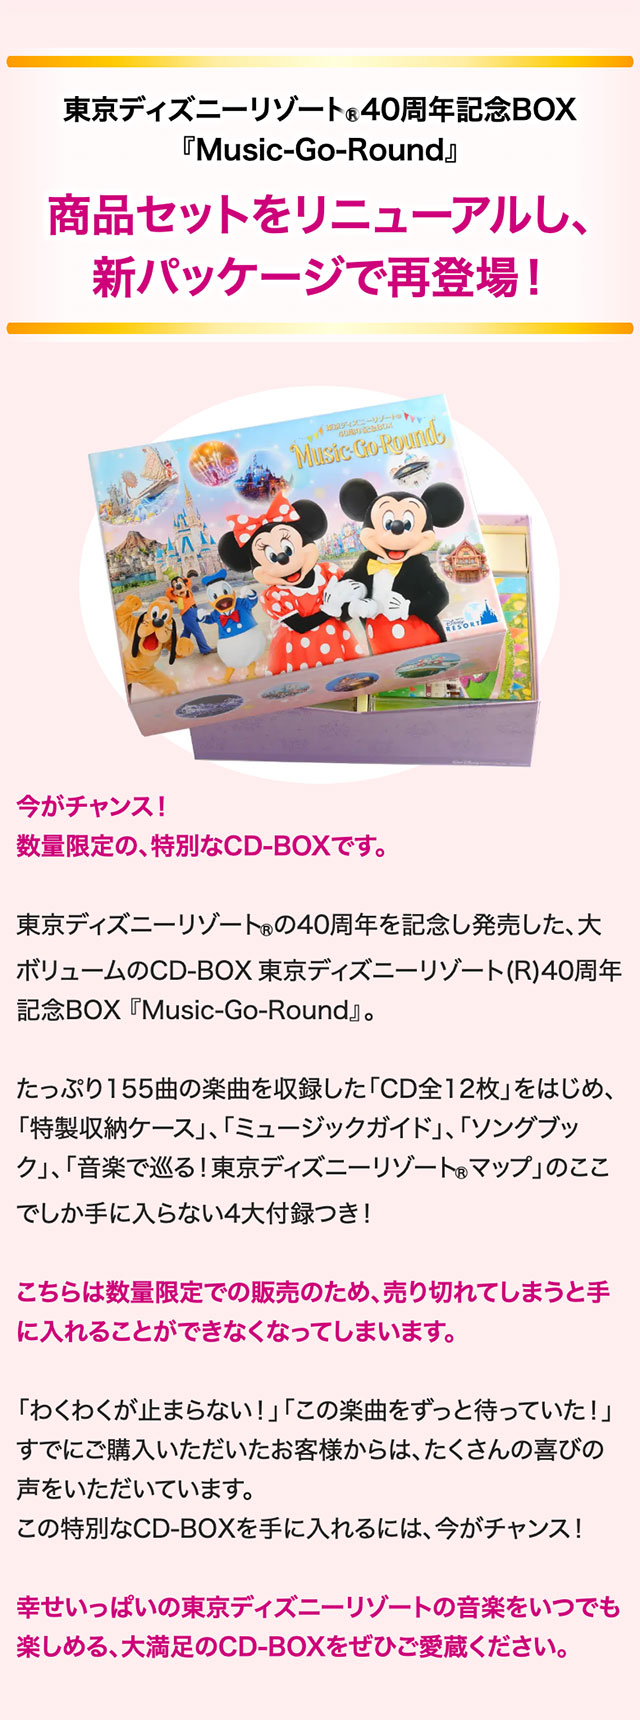 東京ディズニーリゾート(R)40周年記念BOX『Music-Go-Round』